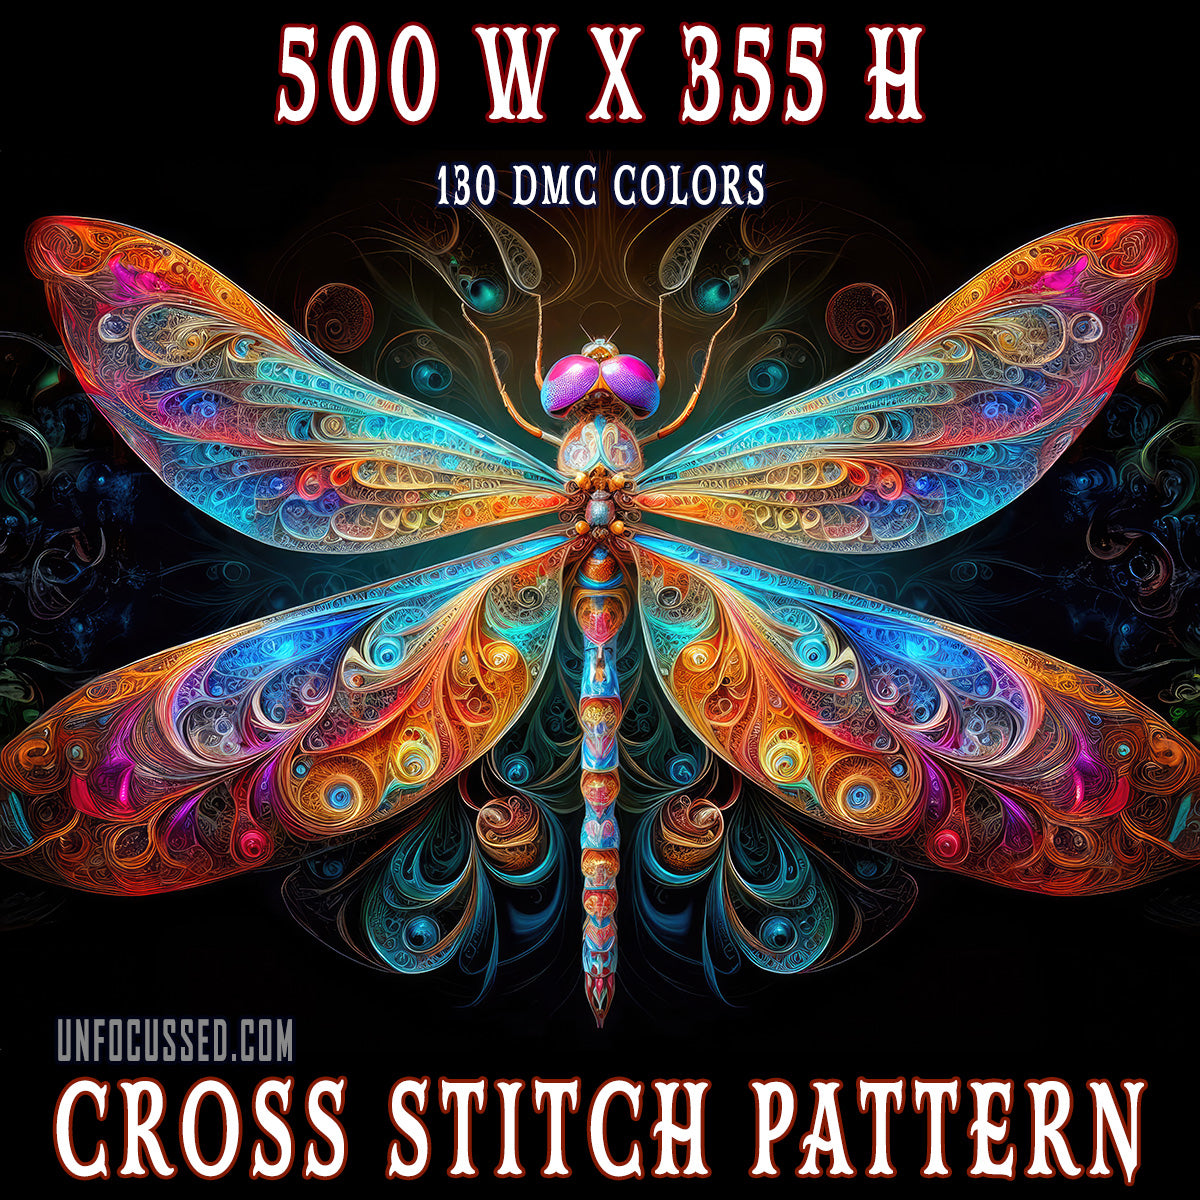 The Aetherwing Illumina Cross Stitch Pattern